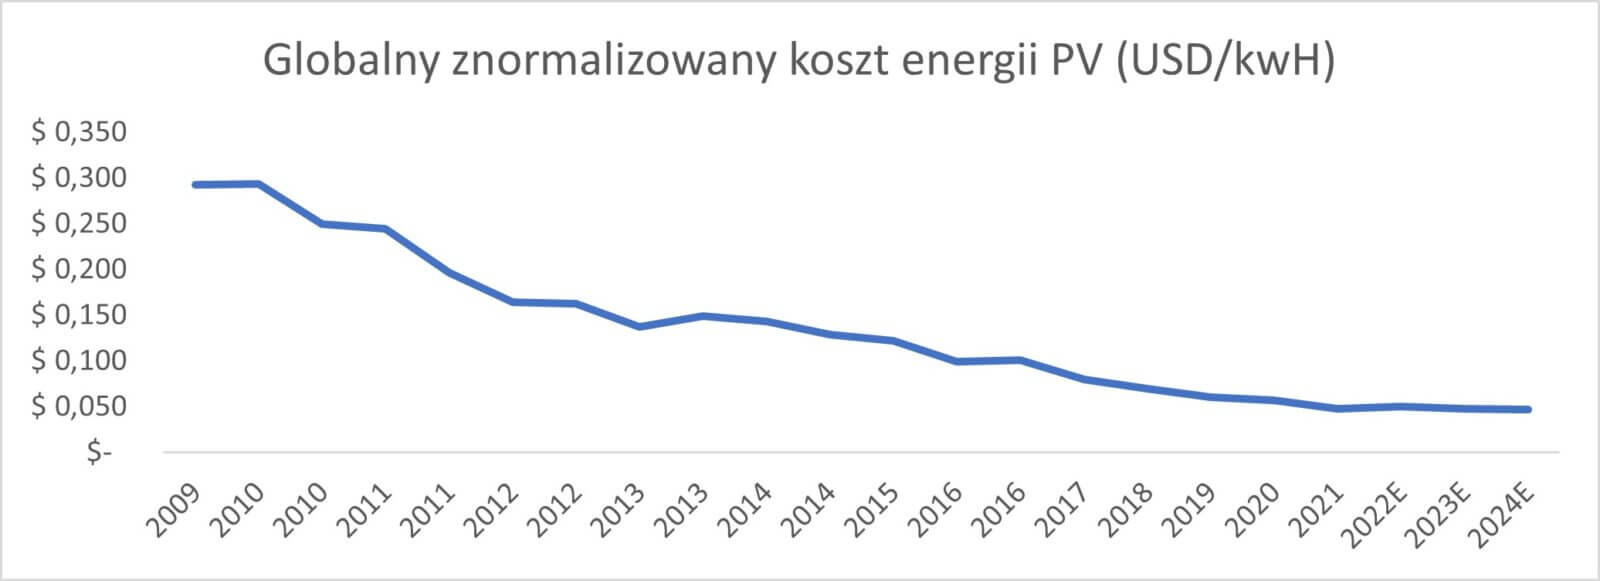 Wykres przedstawiający globalny znormalizowany koszt energii PV (w USD/kwH).